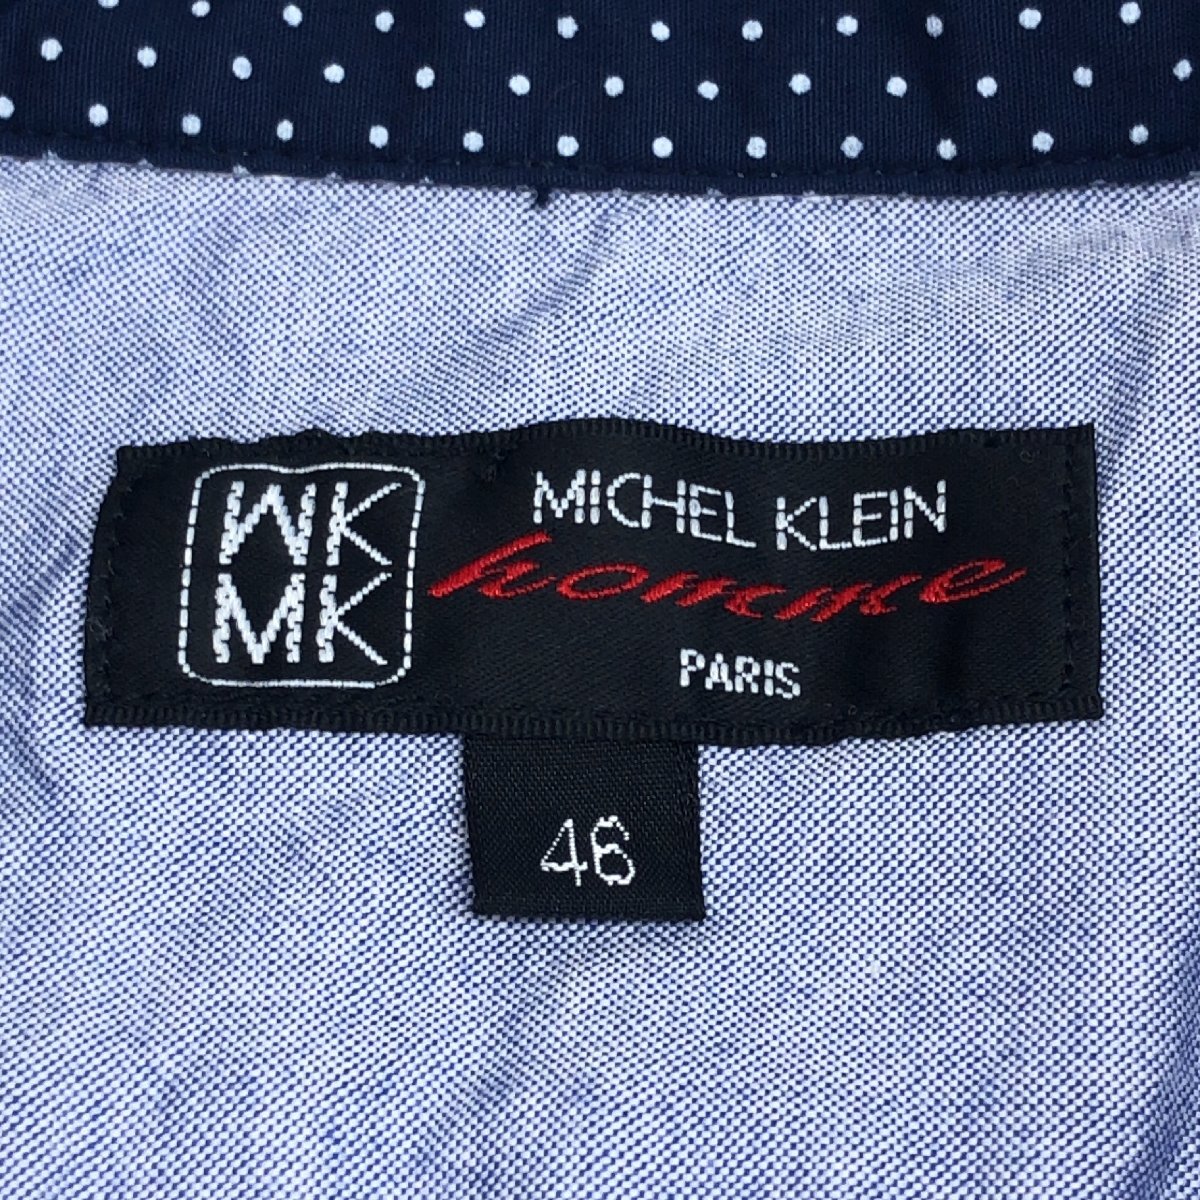 MICHEL KLEIN homme ミッシェルクランオム 部分ドット柄 七分袖 シャツ 46(M) 紺 ネイビー 水玉 コットン 国内正規品 メンズ 紳士の画像3